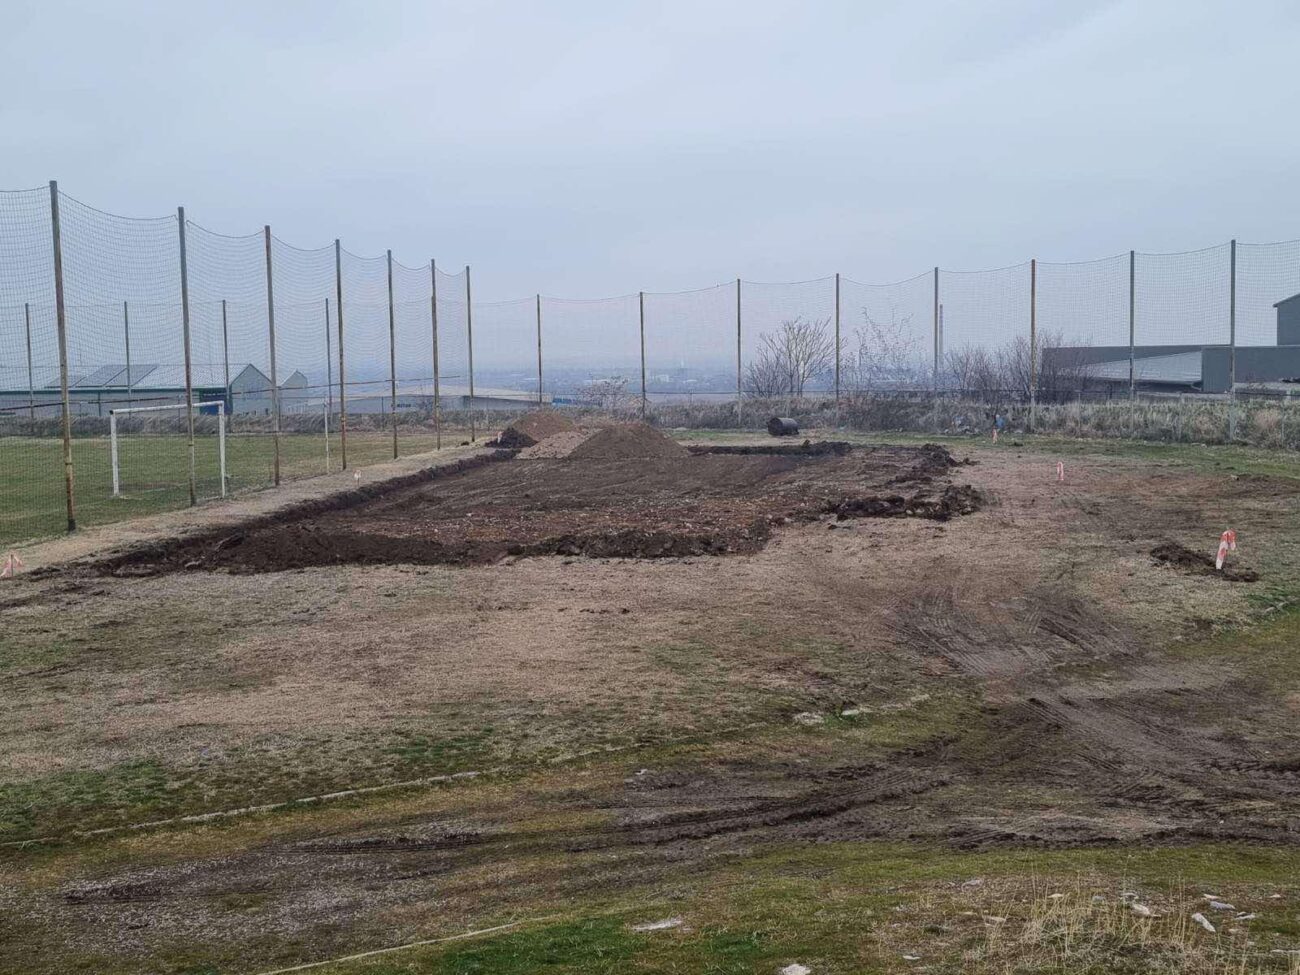 Започна изграждането на детска площадка и игрище за футбол в Куклен (СНИМКИ)